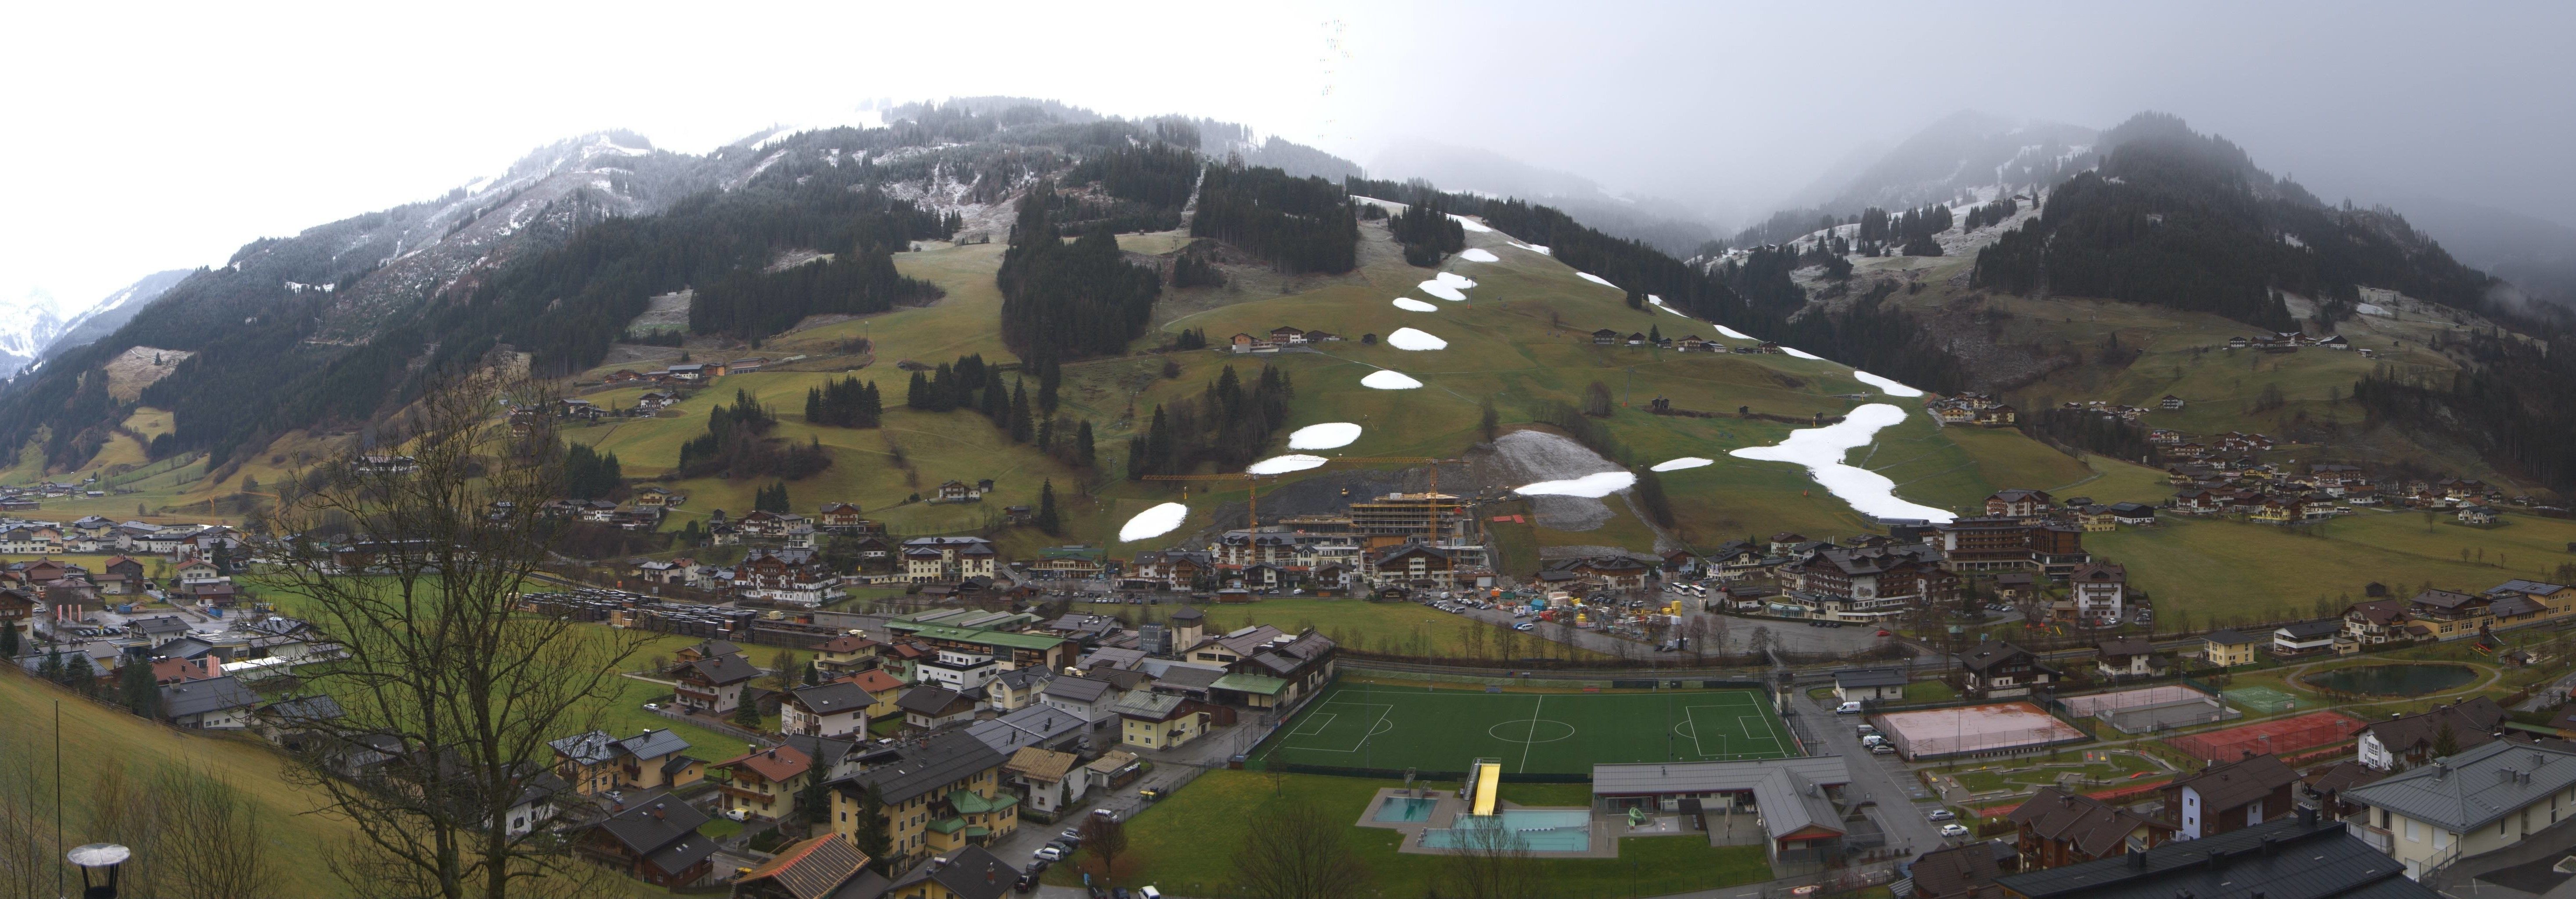 Vanochtend lag de sneeuwgrens in het Großarltal op ongeveer 1300 meter, maar ook hier gaat het in de loop van de dag sneeuwen tot in het dal.